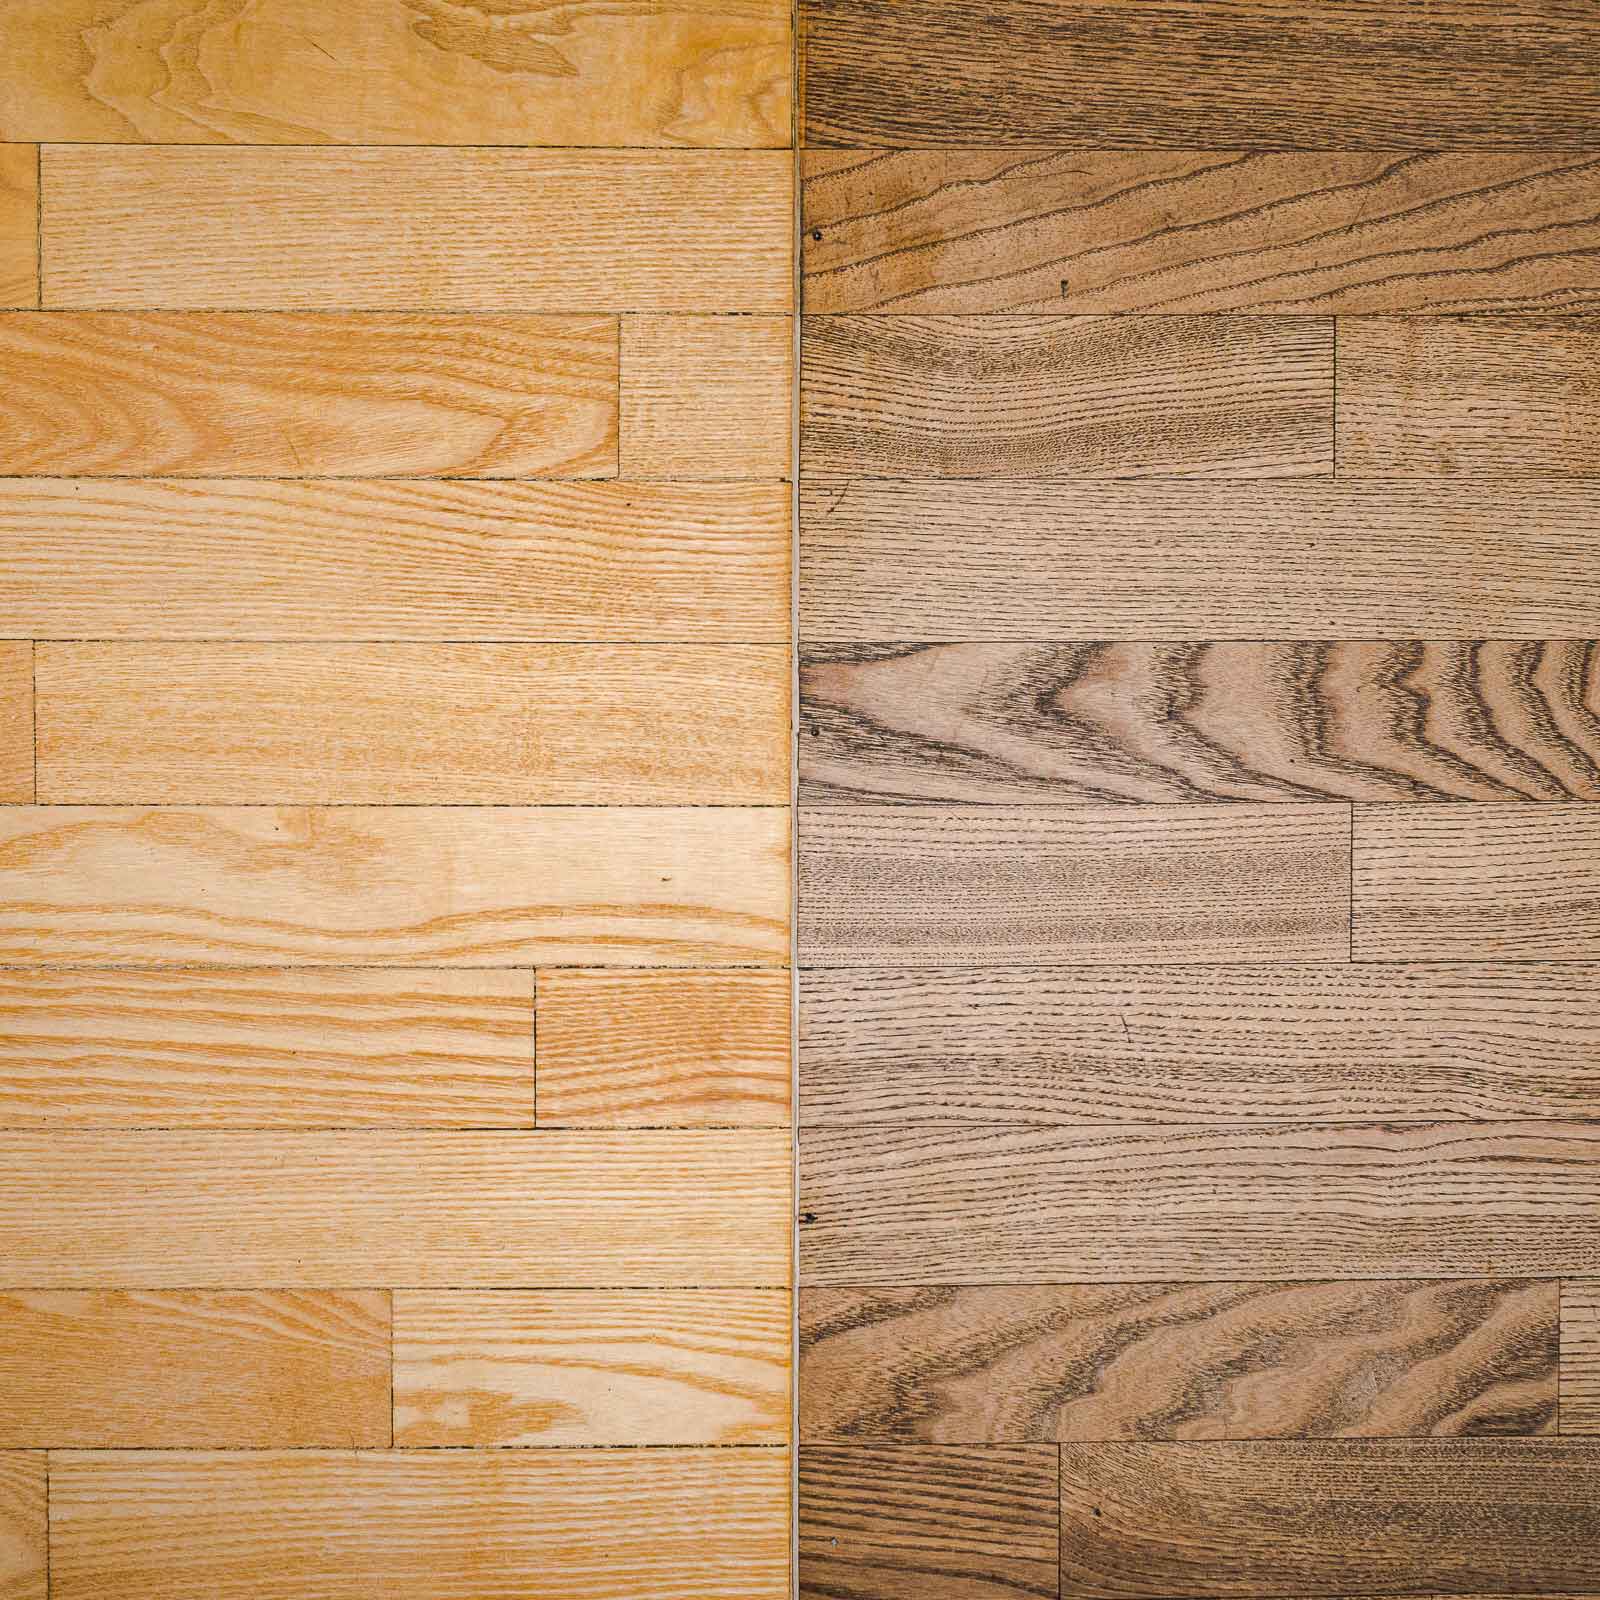 Bild zeigt Vorher/Nachher-Vergleich mit saniertem Holzboden von ROBIA.